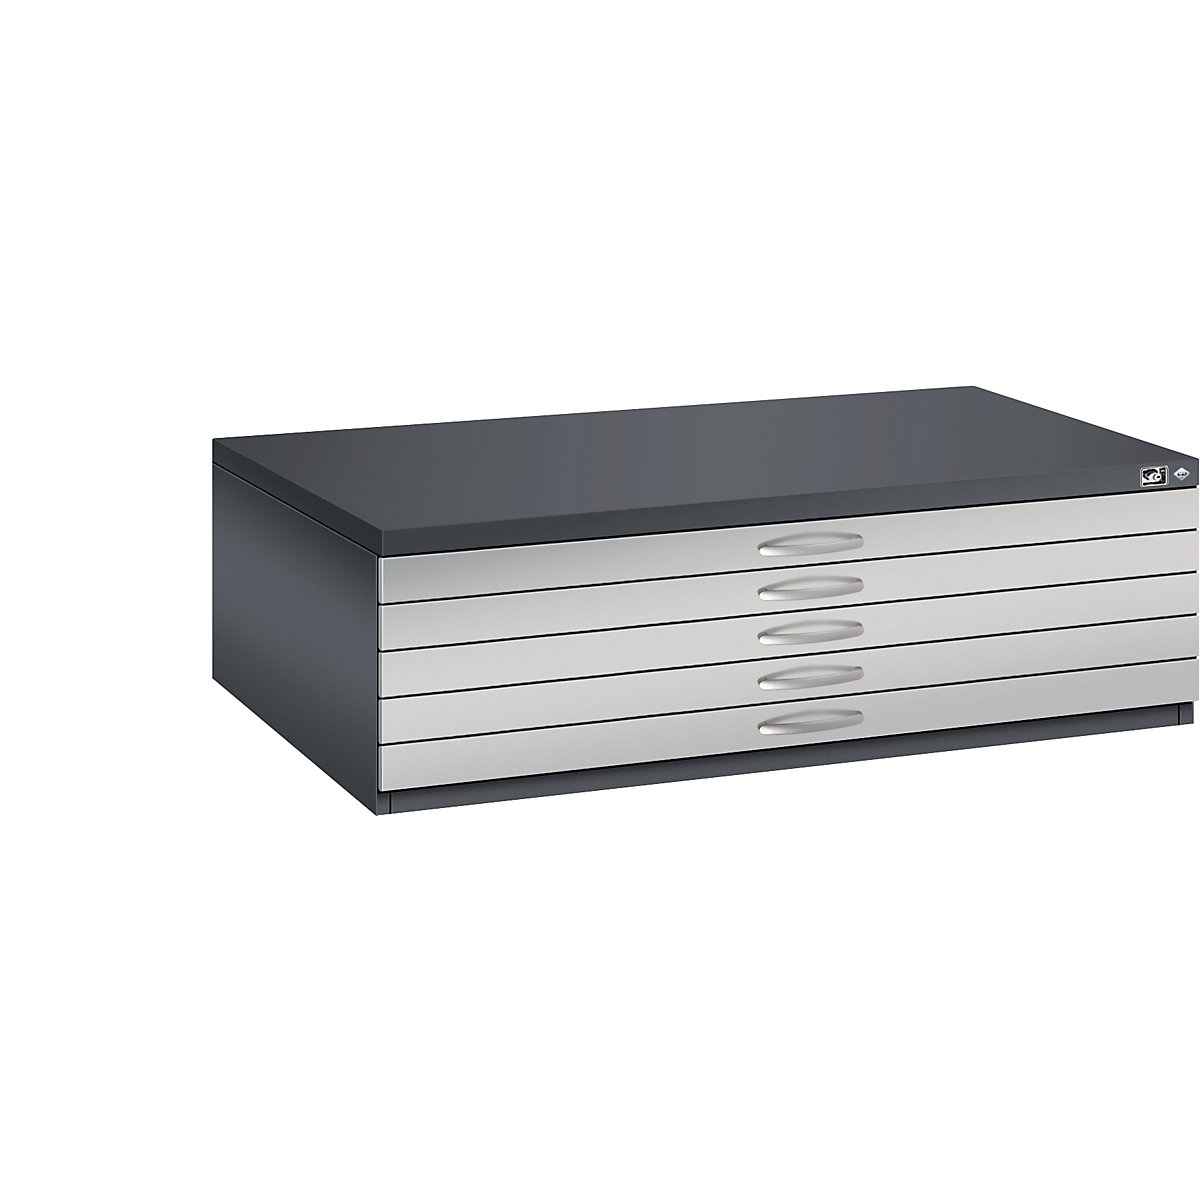 Dulap pentru planșe – C+P, DIN A0, 5 sertare, înălțime 420 mm, gri negru / alb aluminiu-15